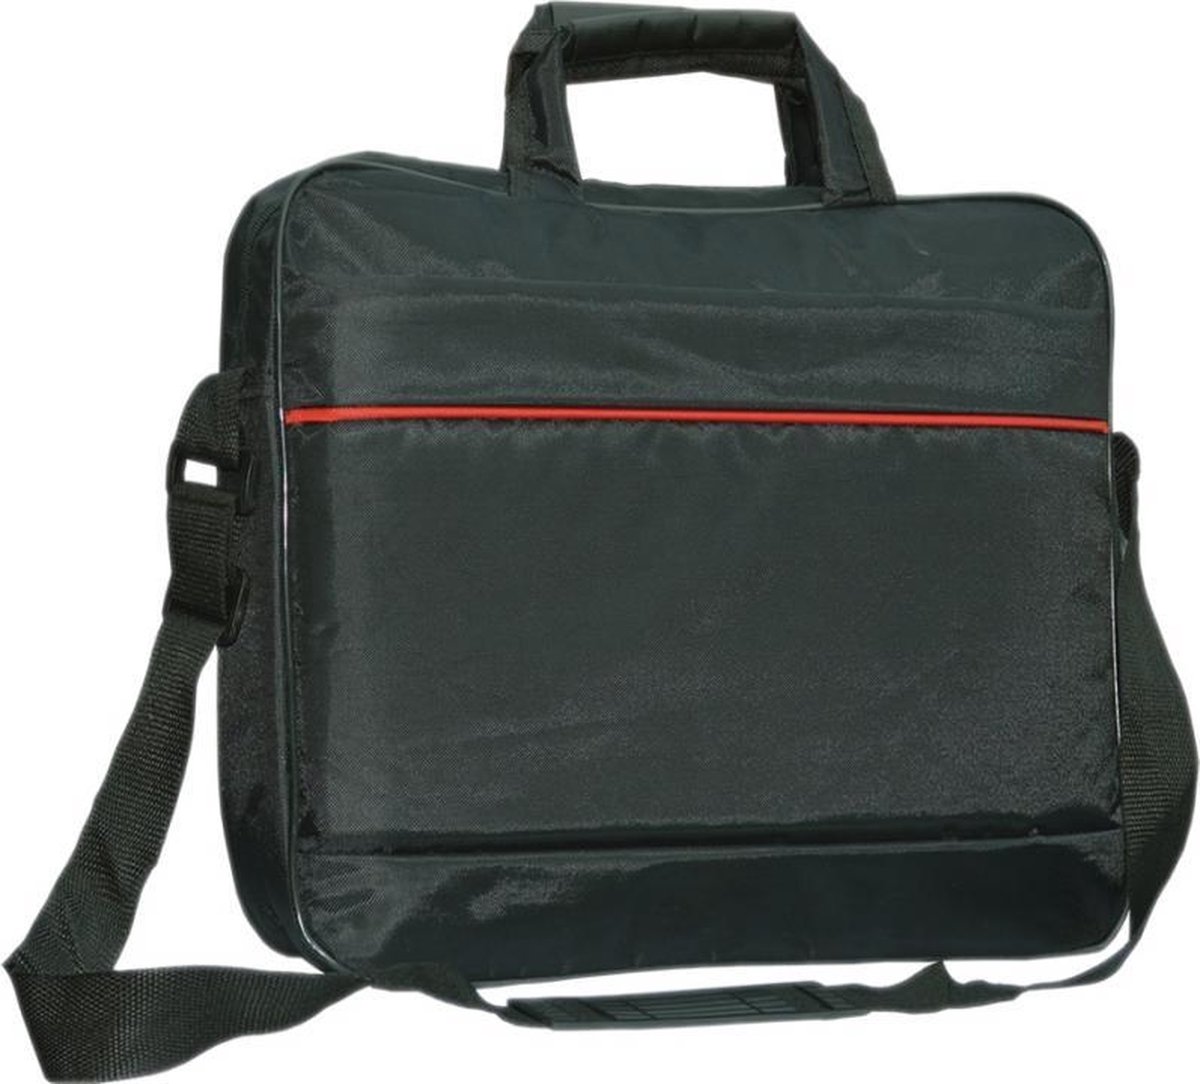 Apple Macbook Pro 13 Inch Retina laptoptas messenger bag / schoudertas / tas , zwart , merk i12Cover